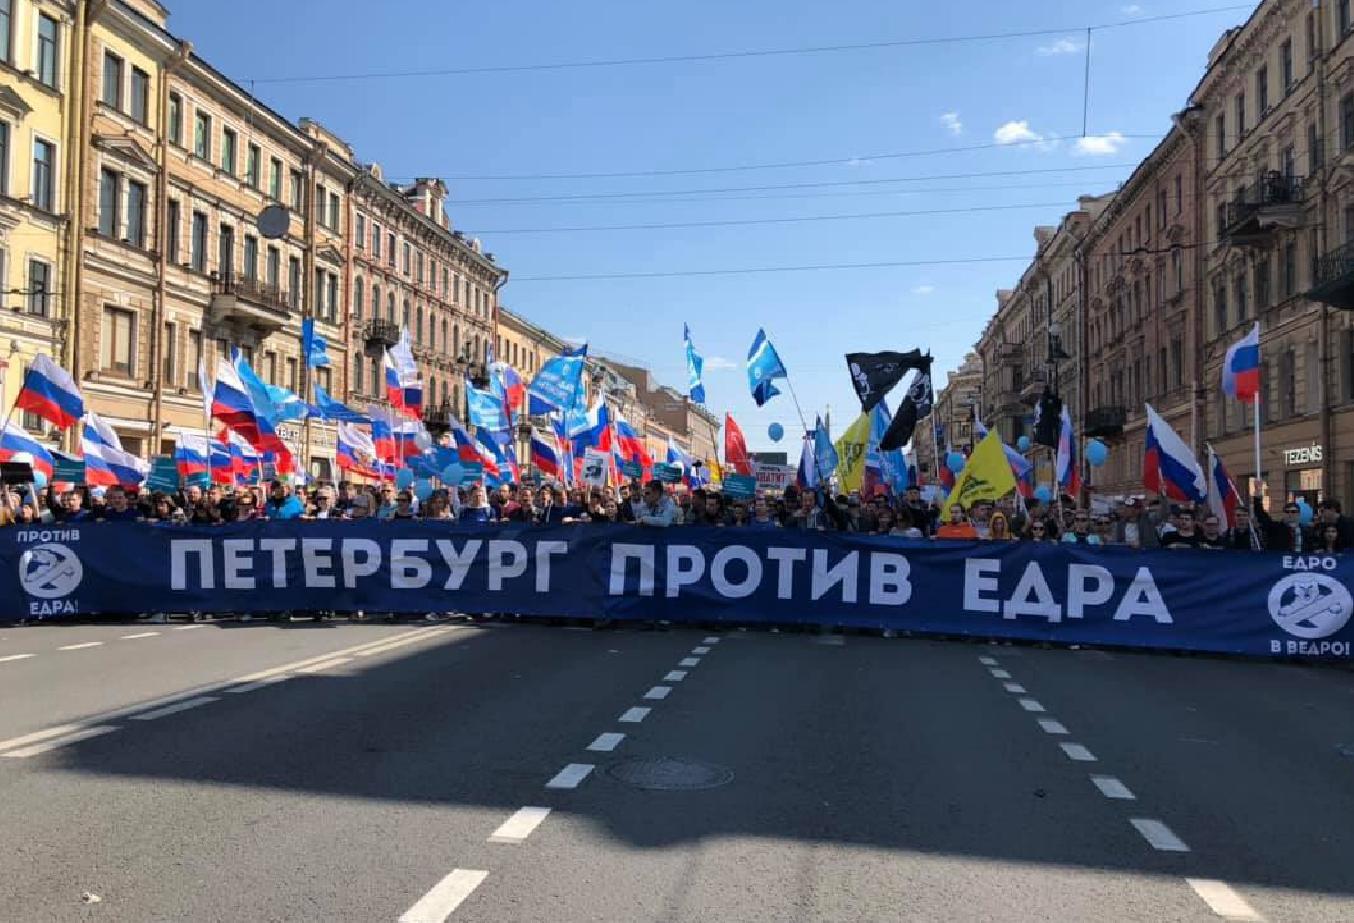 Каким будет май в спб. 1 Мая Санкт Петербург. Демонстрация в Санкт Петербурге. Против ЕДРА.